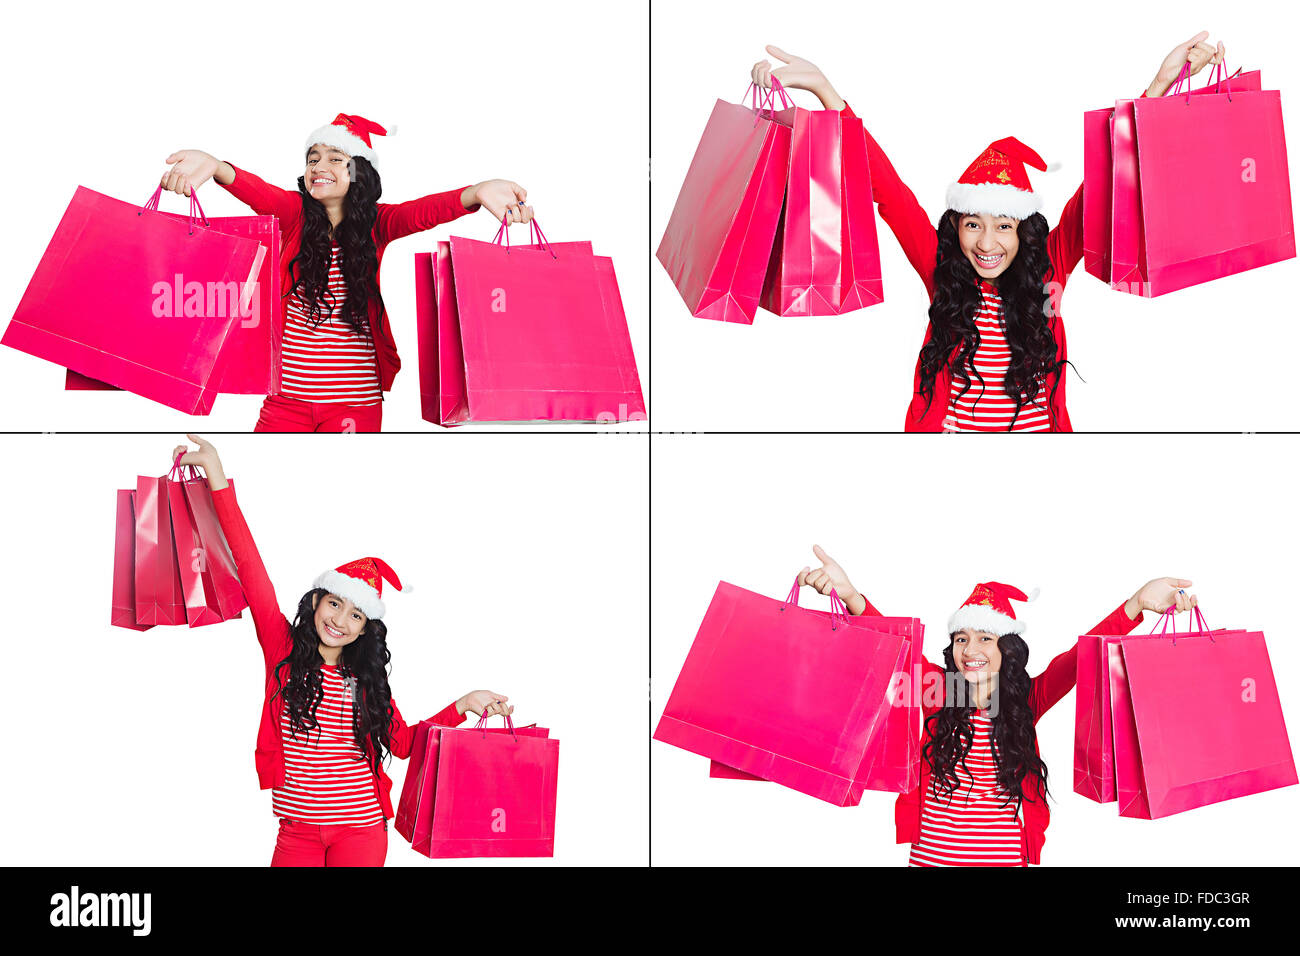 1 indian giovane ragazza adolescente shopping bag abbondanza shopping celebrazione di Natale espressione facciale FOTO MONTAGE Foto Stock